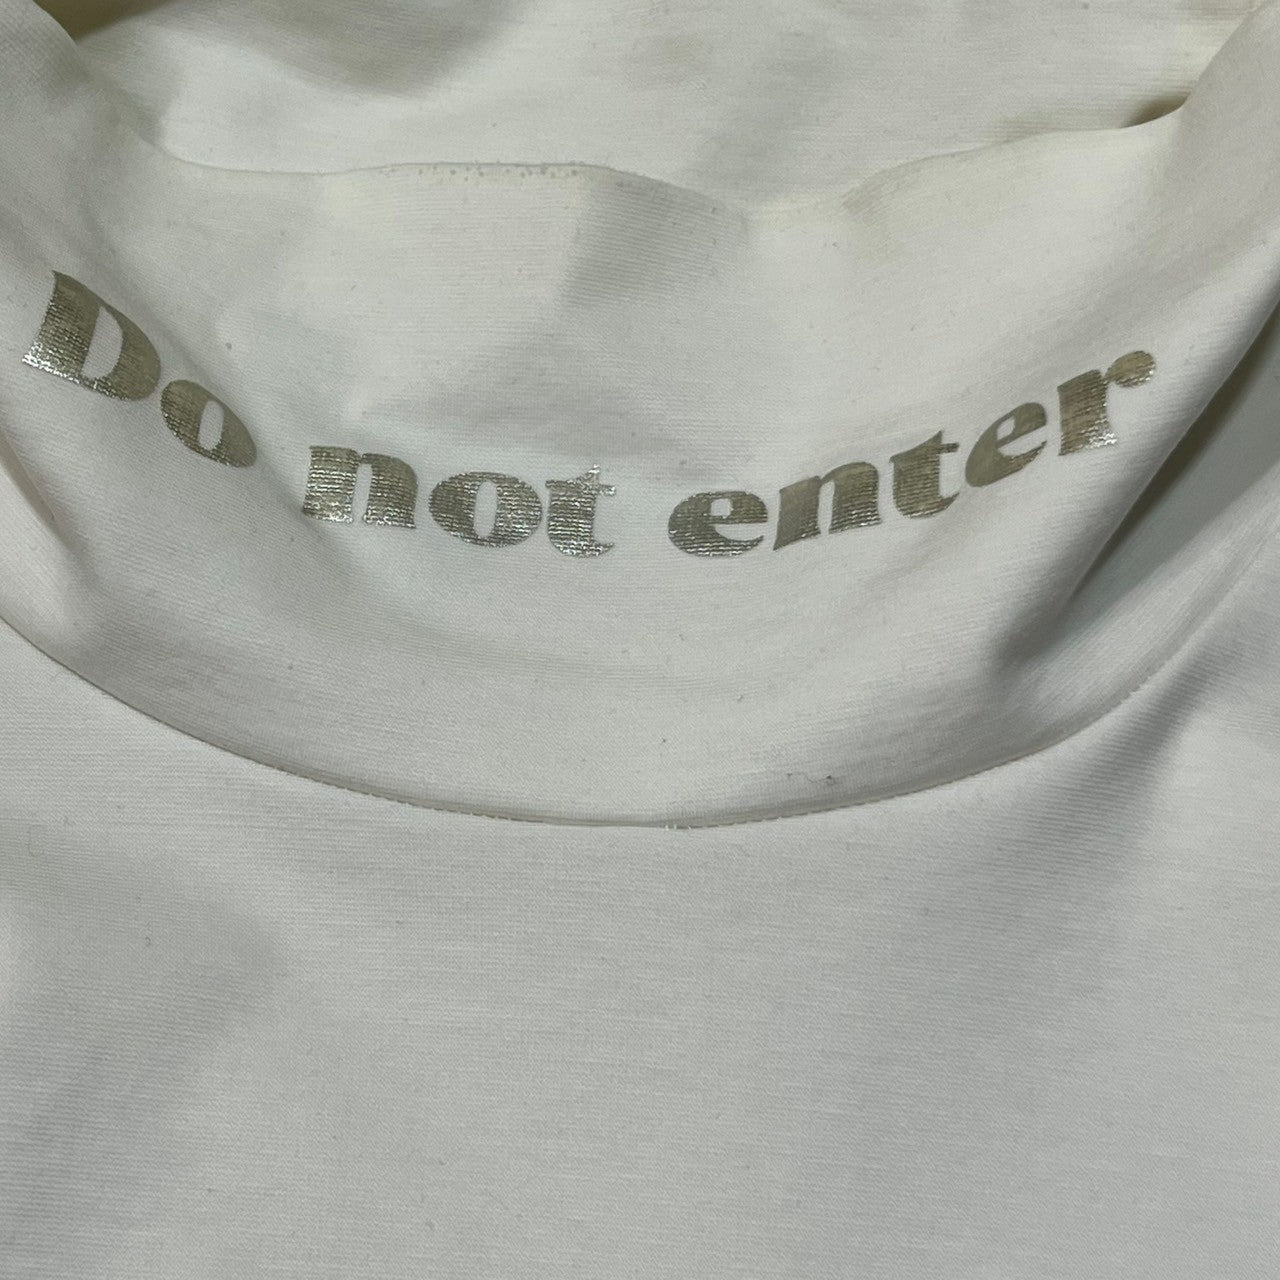 kolor(カラー) 19AW "Do not enter"コットンポンチ ハイネック ハットソー 長袖 Tシャツ メッセージ プリント 19WCM-T02202 2(M程度) ホワイト